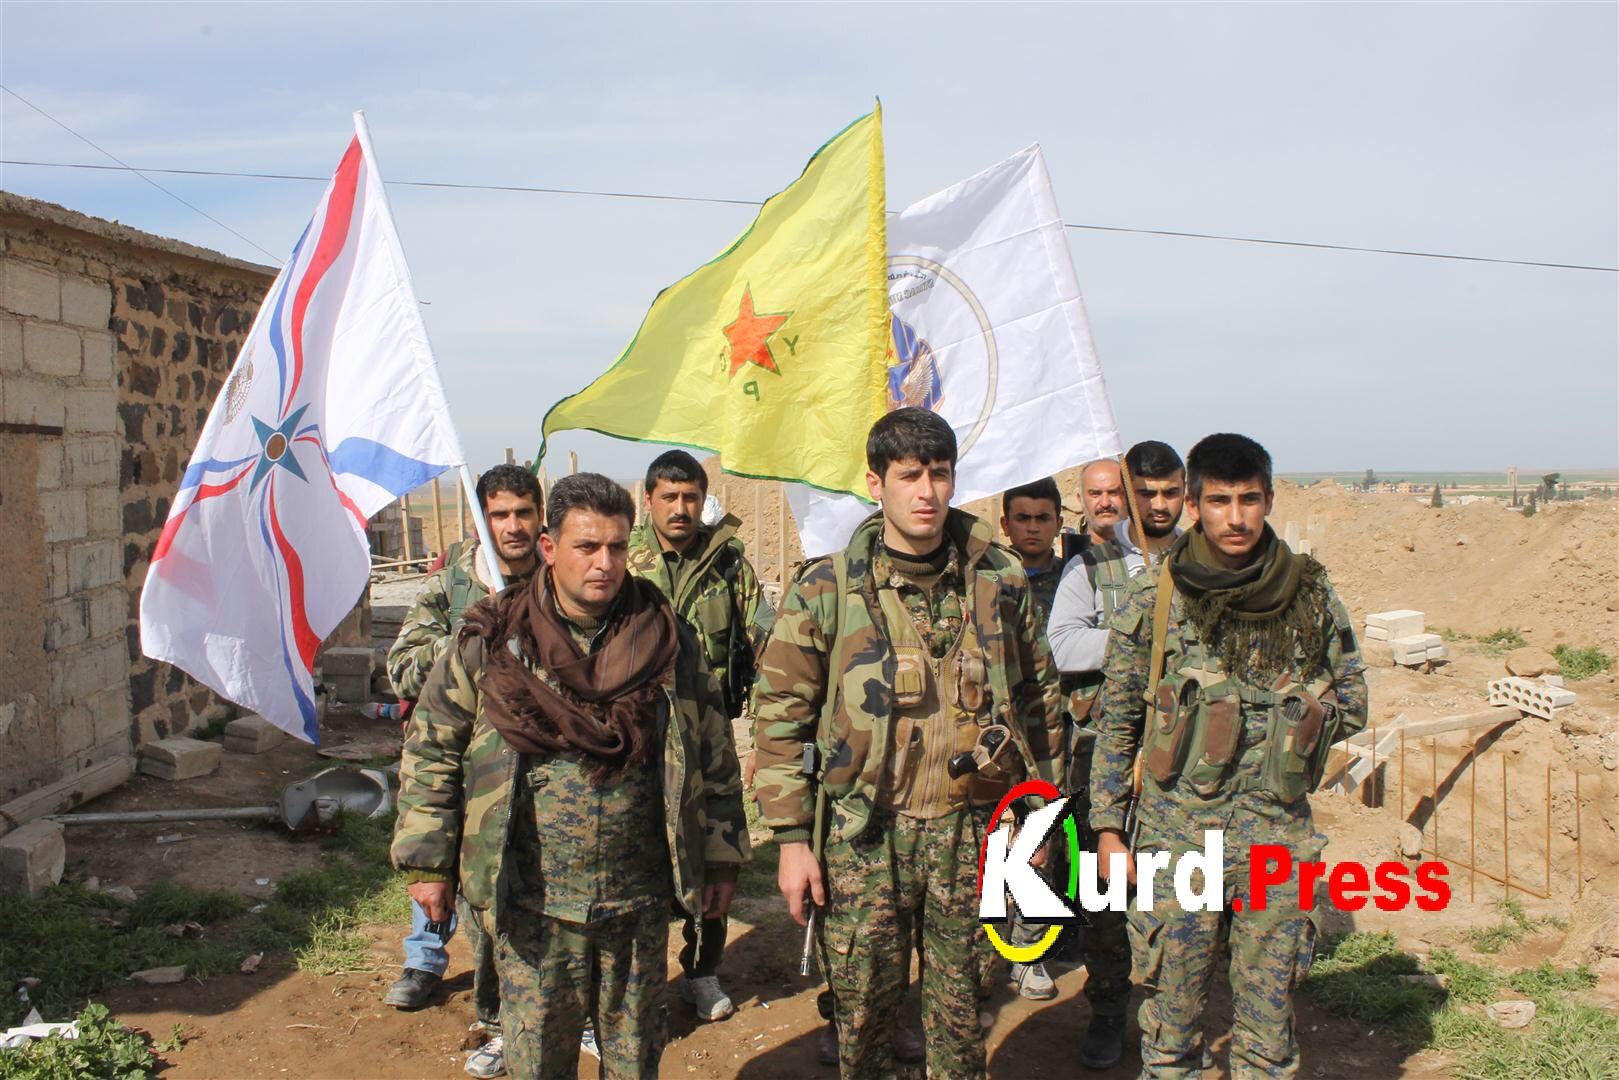 СМИ: Курды отказались покидать базу Манаг в Сирии, несмотря на требование Анкары